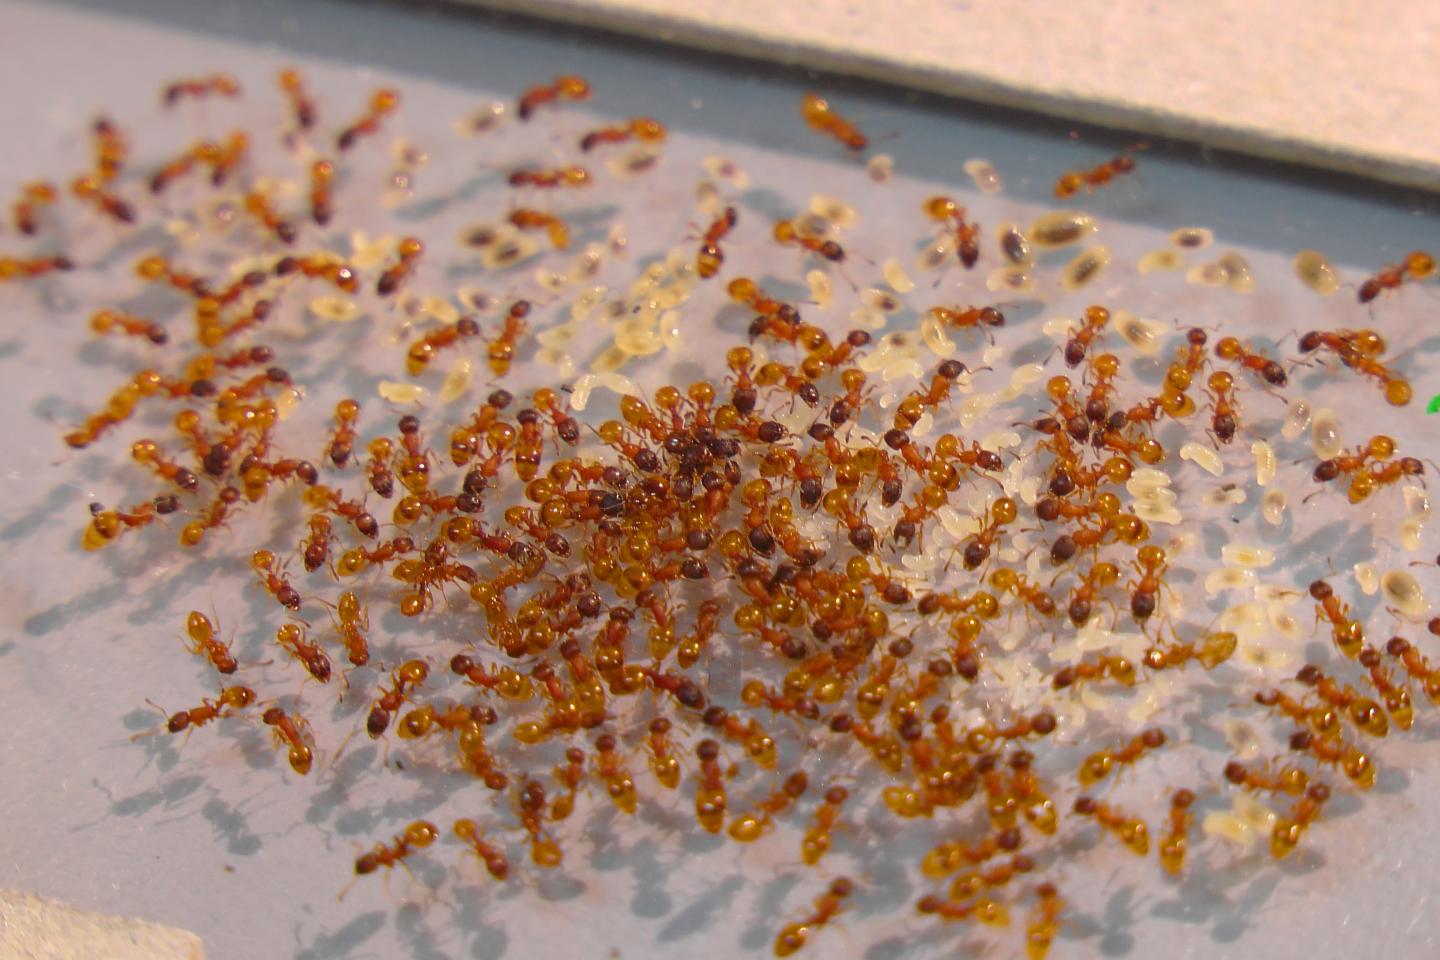 Ant Colony Responds to Predation Simulation as a 'Superorganism'